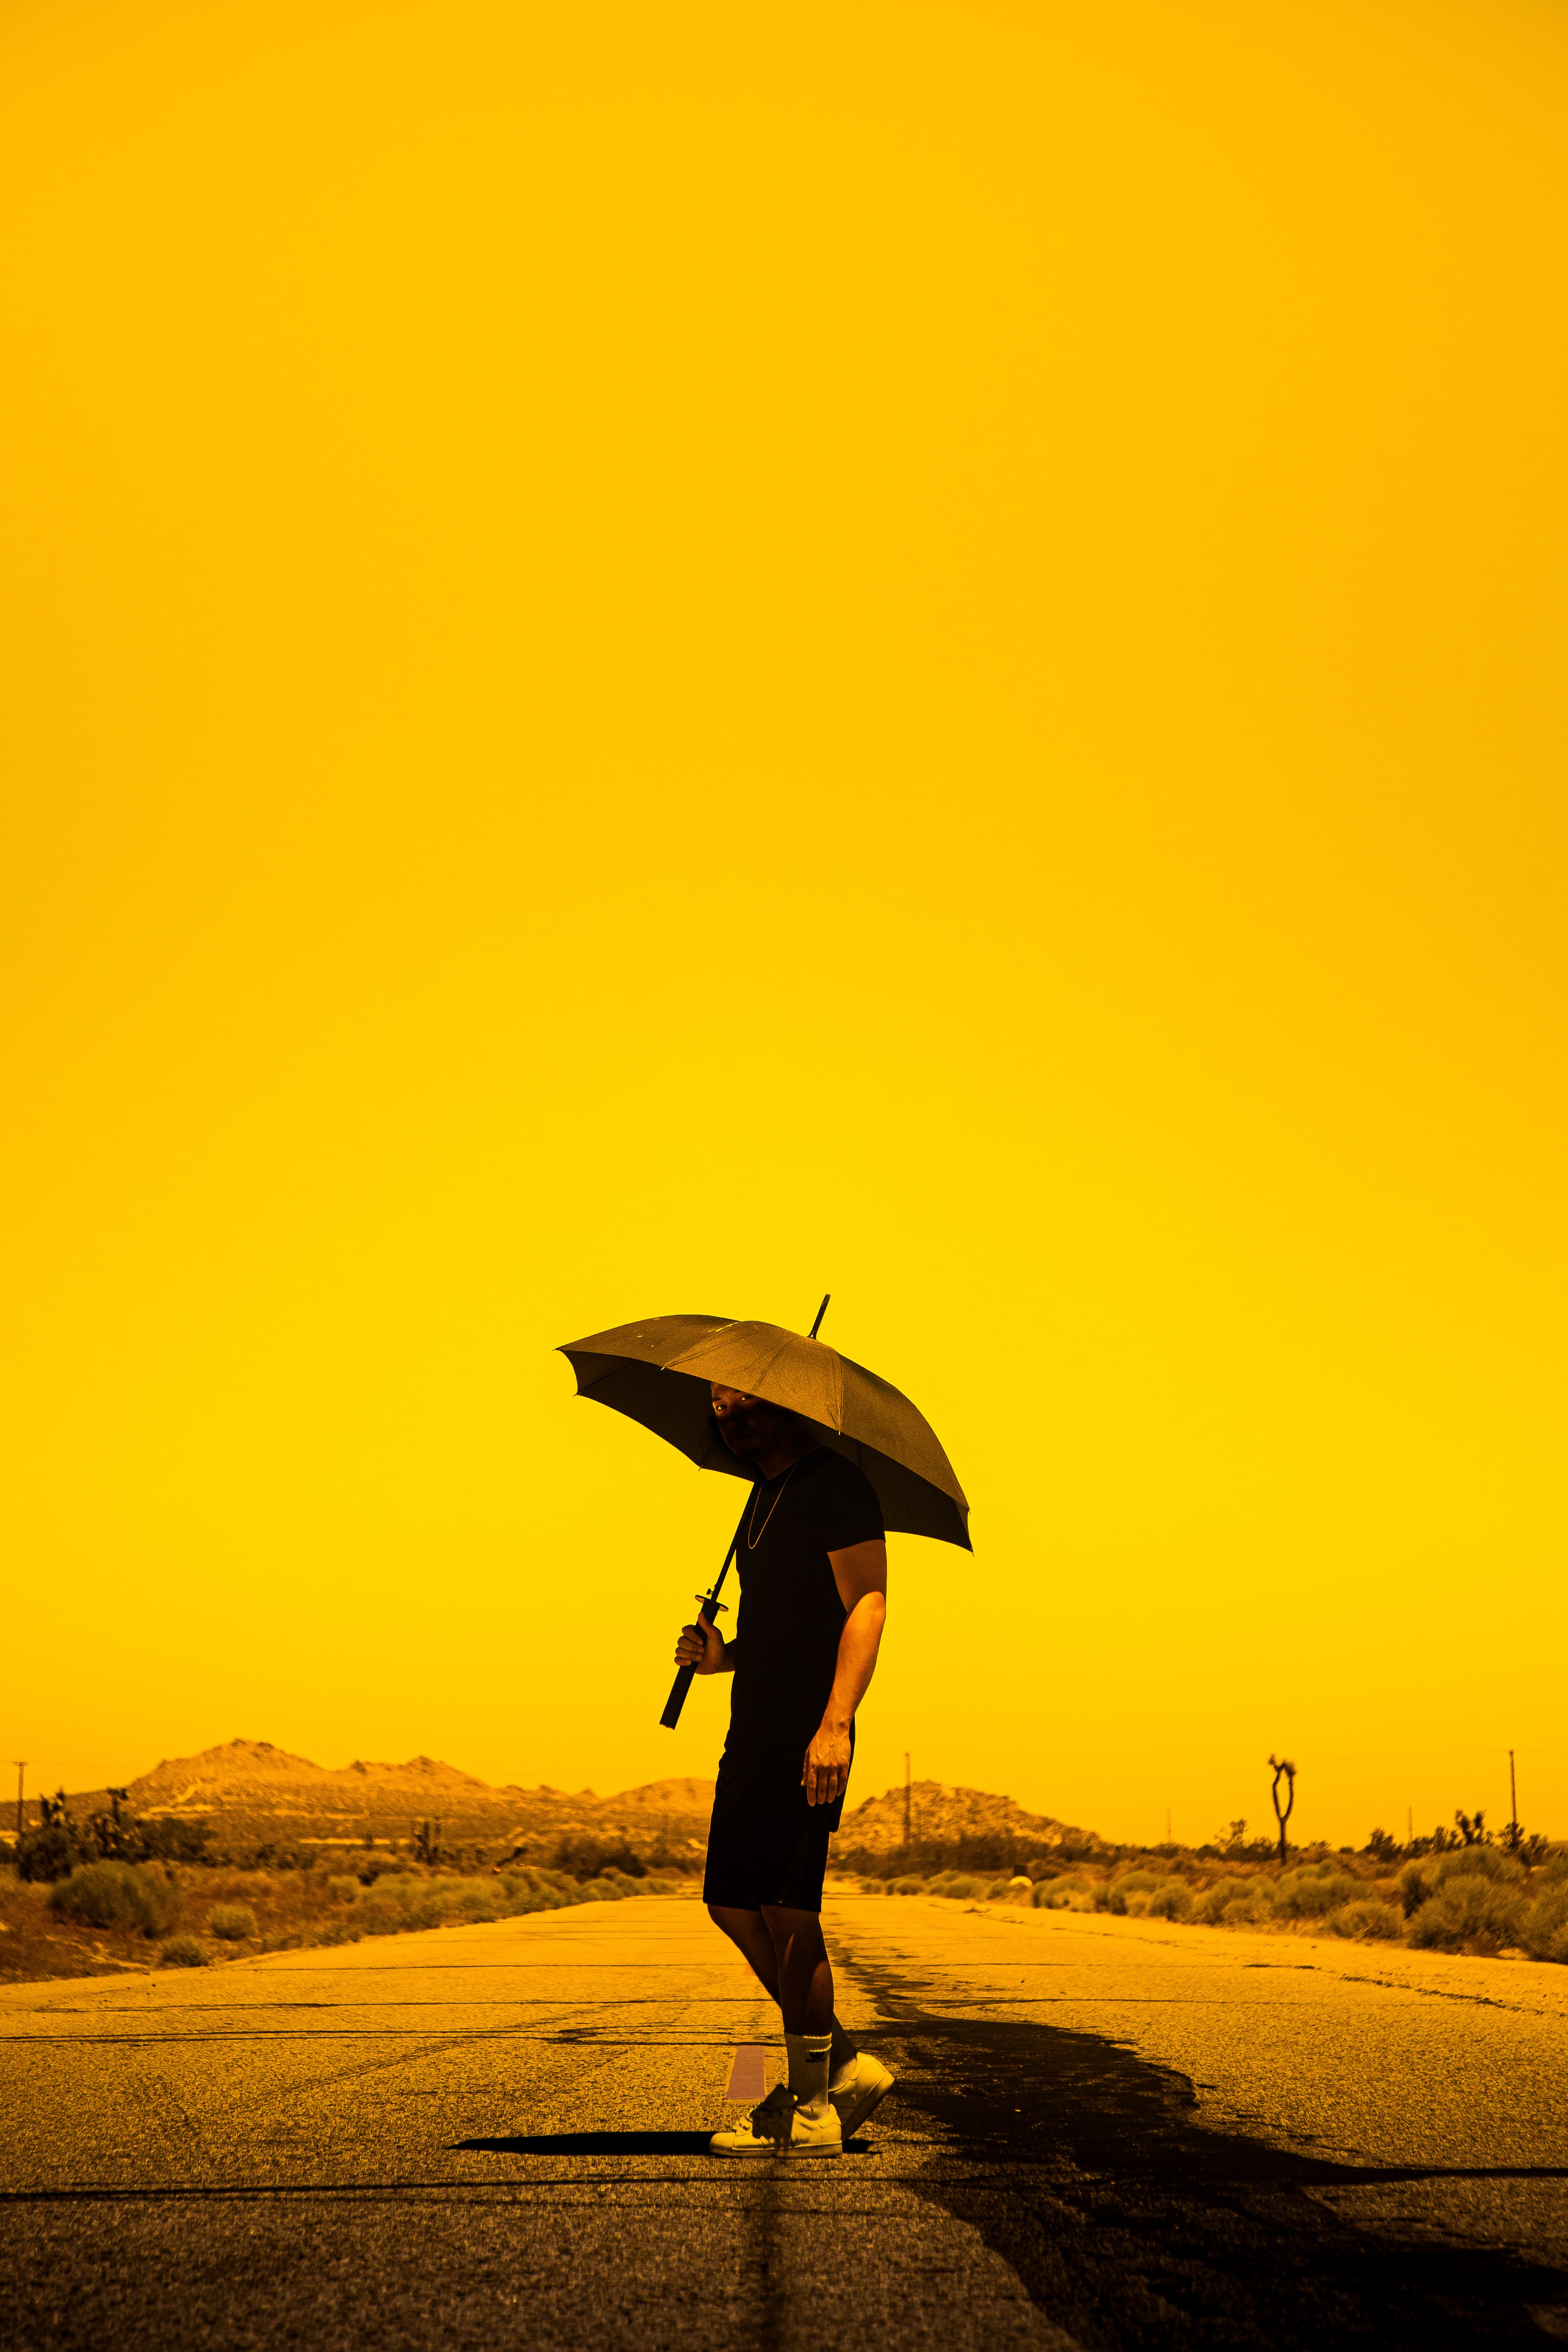 Popular Umbrella Image for Phone